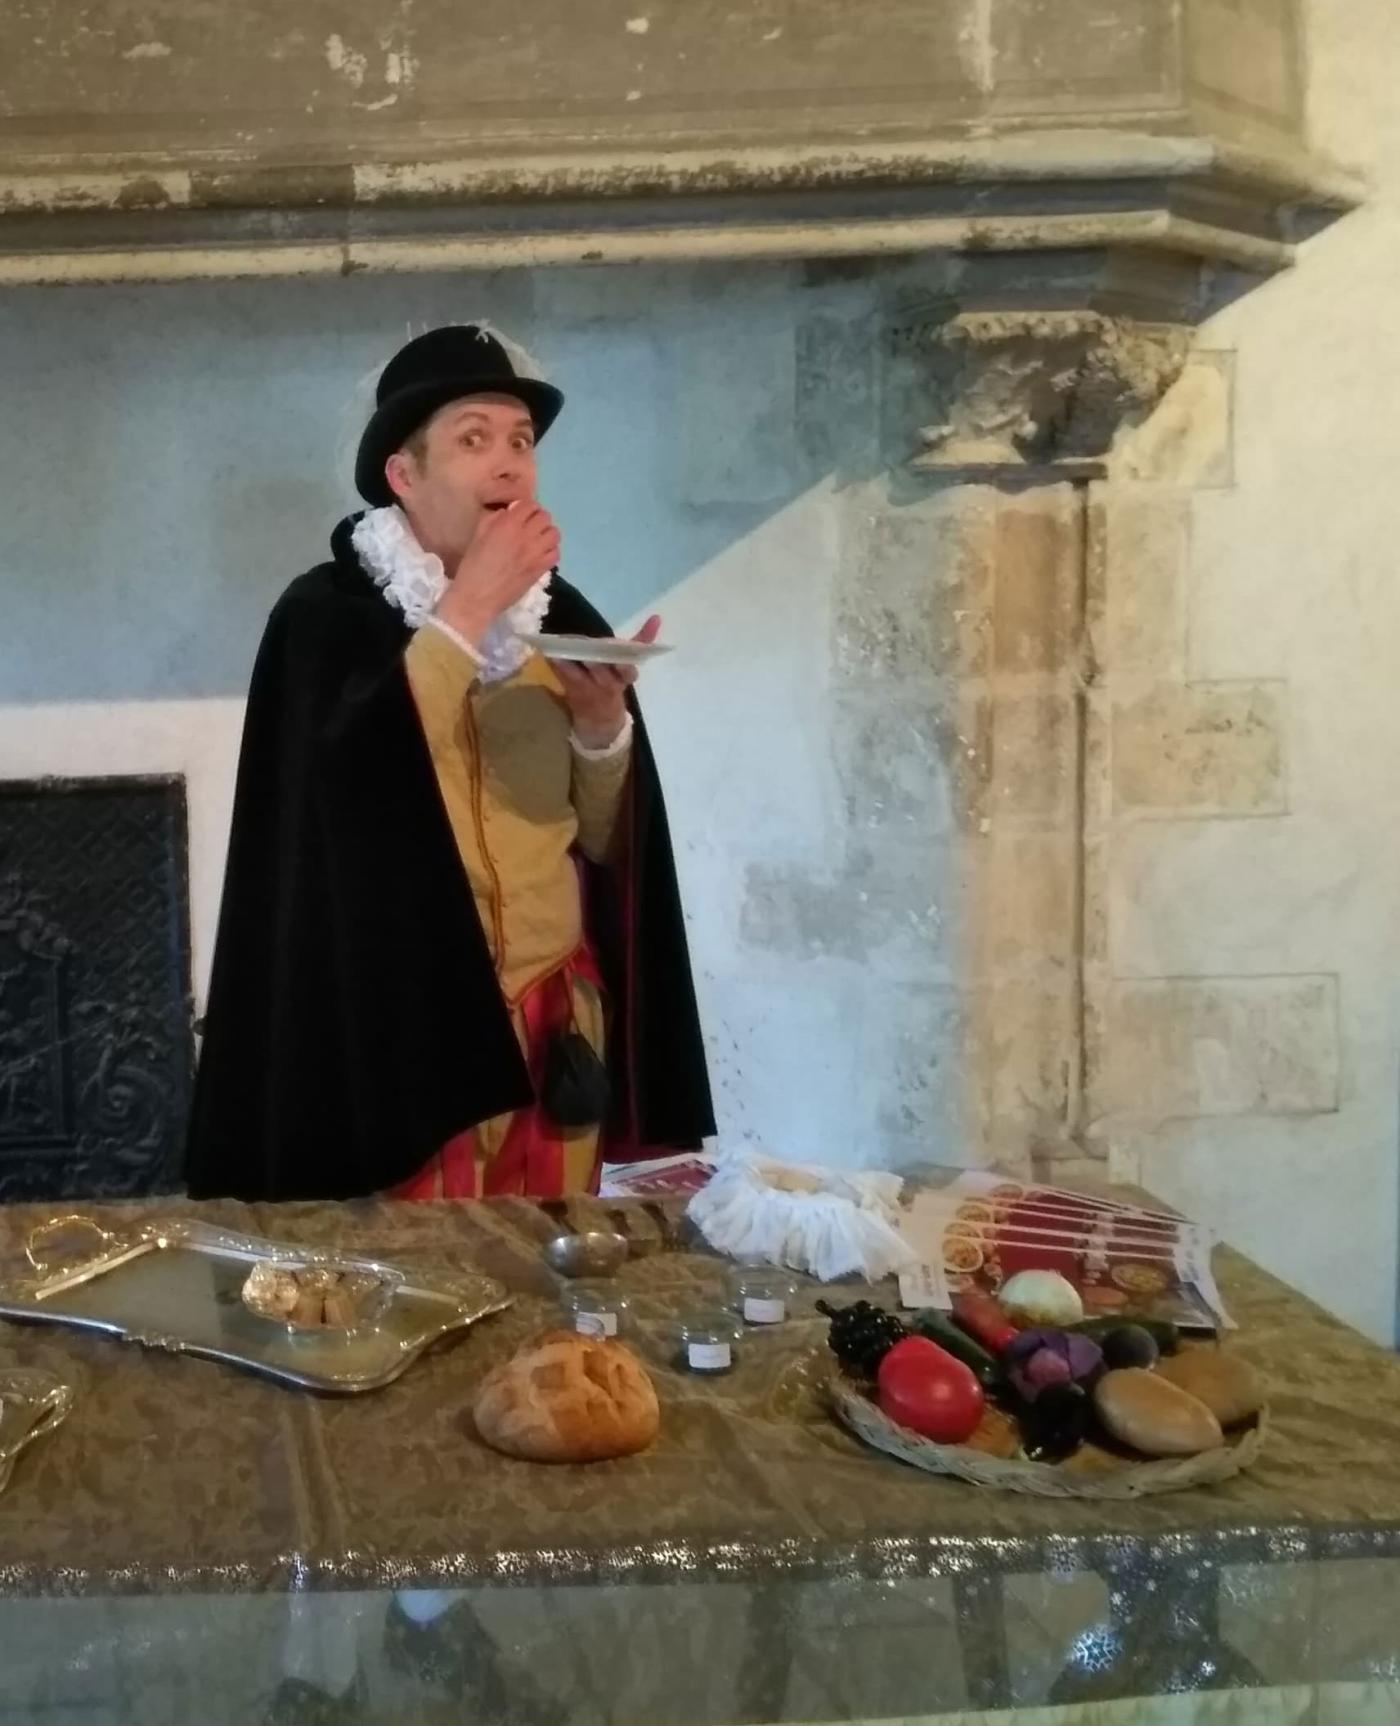 Dans une pièce su château de Sully, grande table garnie de nourriture, un homme du château en habit d'époque, s'apprête à manger.